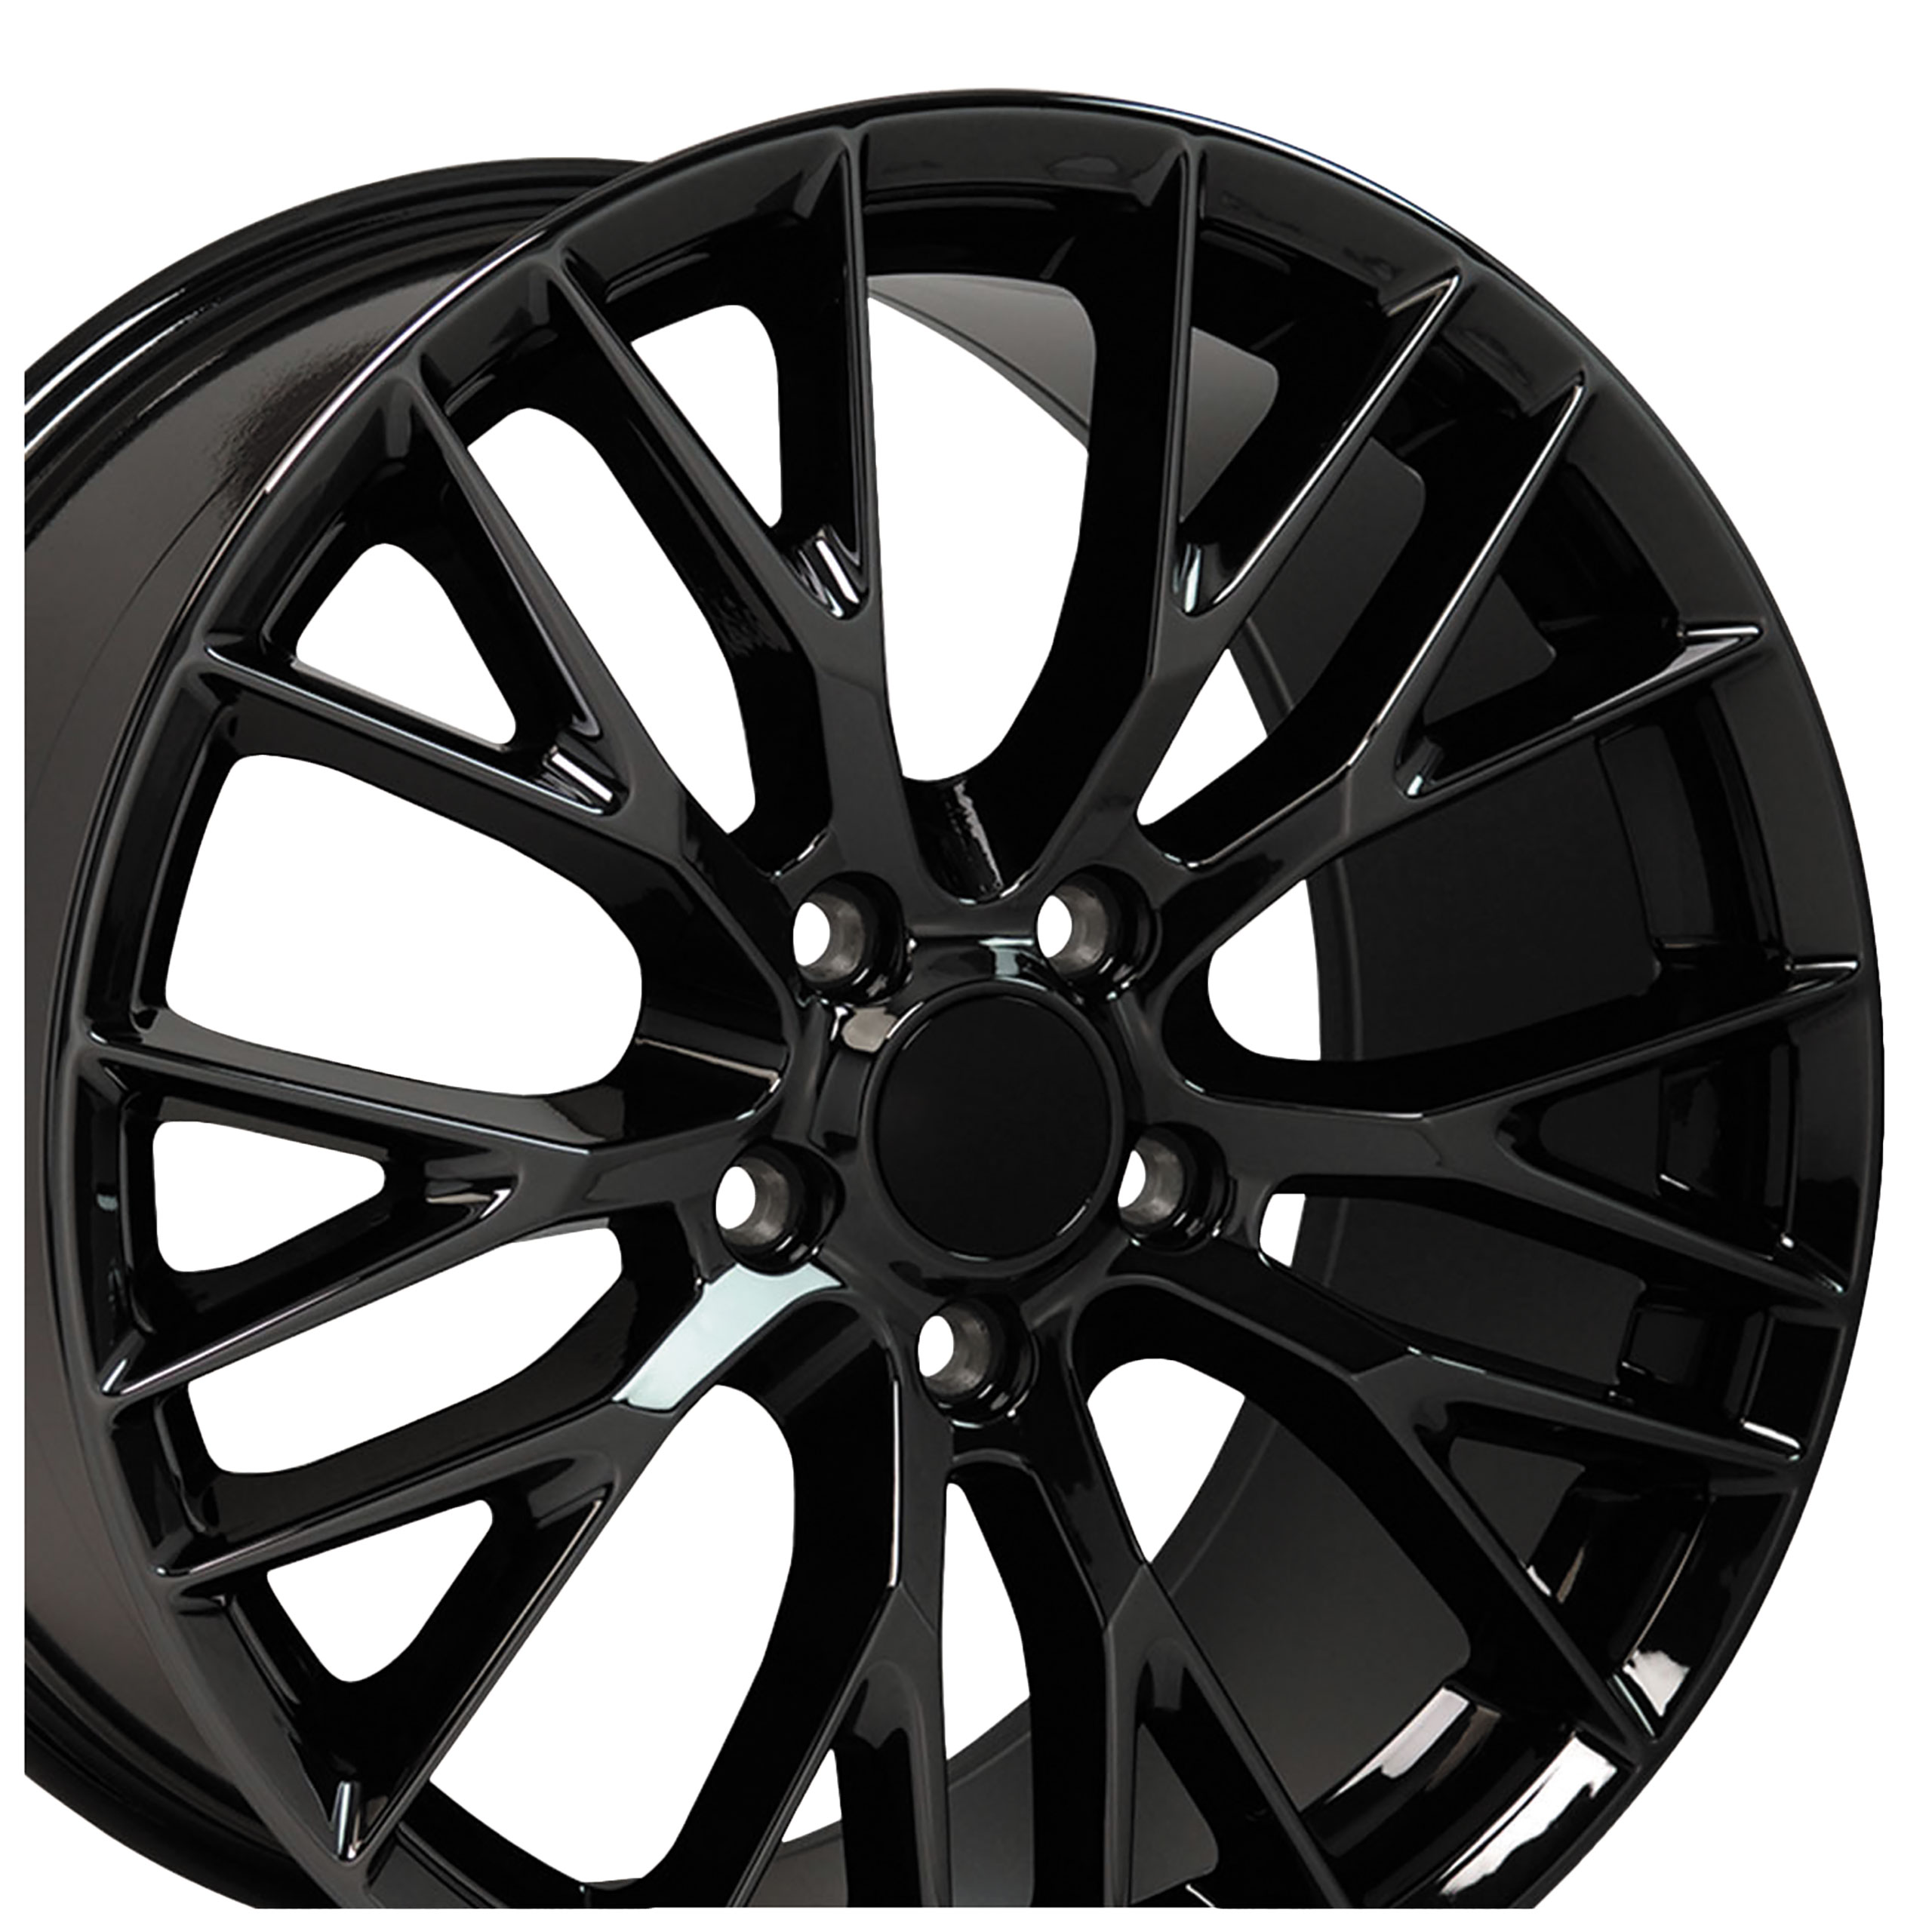 C7 Z06 Style Gloss Black Wheel 19x10 79mm Offset For 2006-2019 Corvette